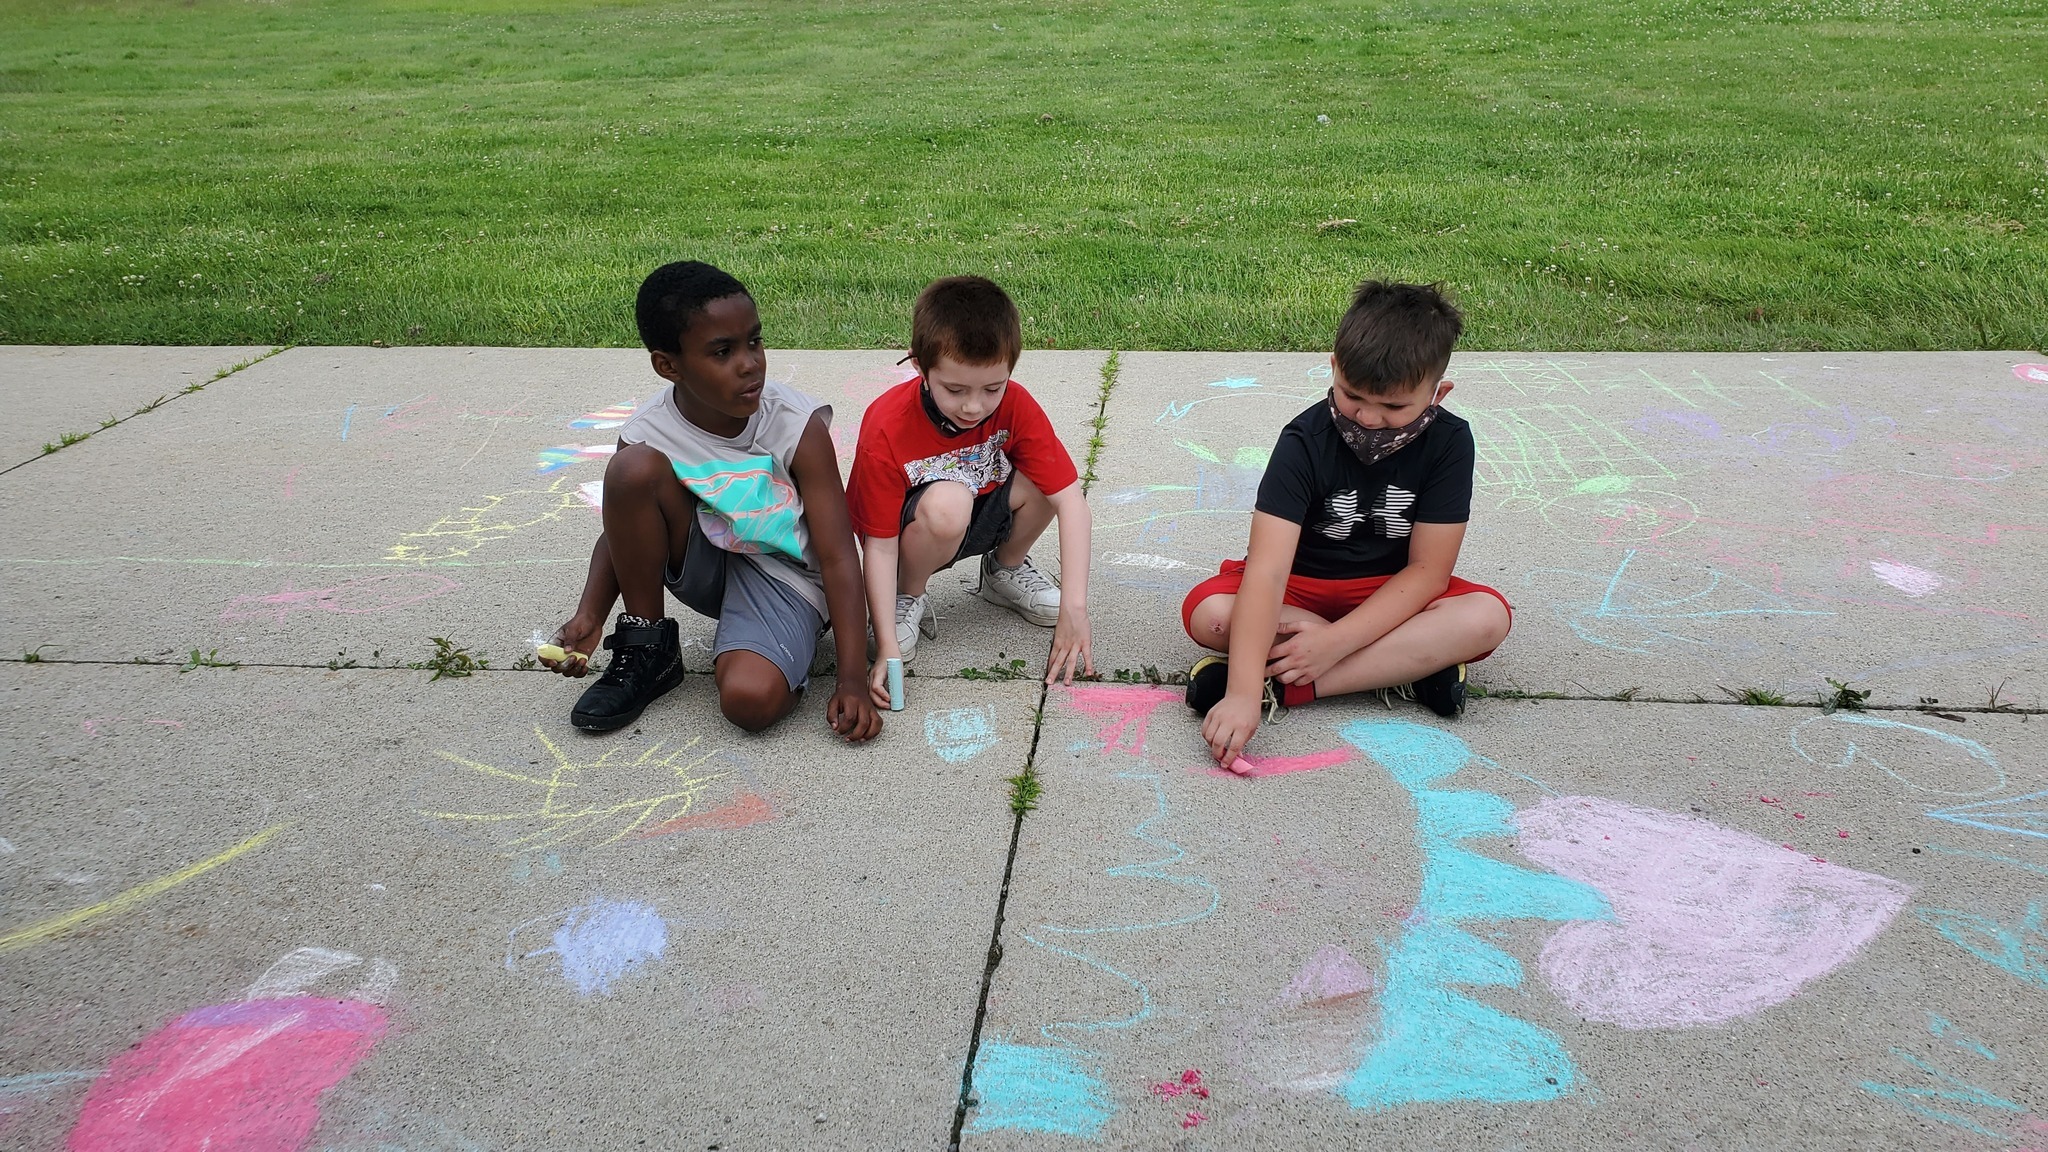 Three boys draw on pavement with sidewalk chalk